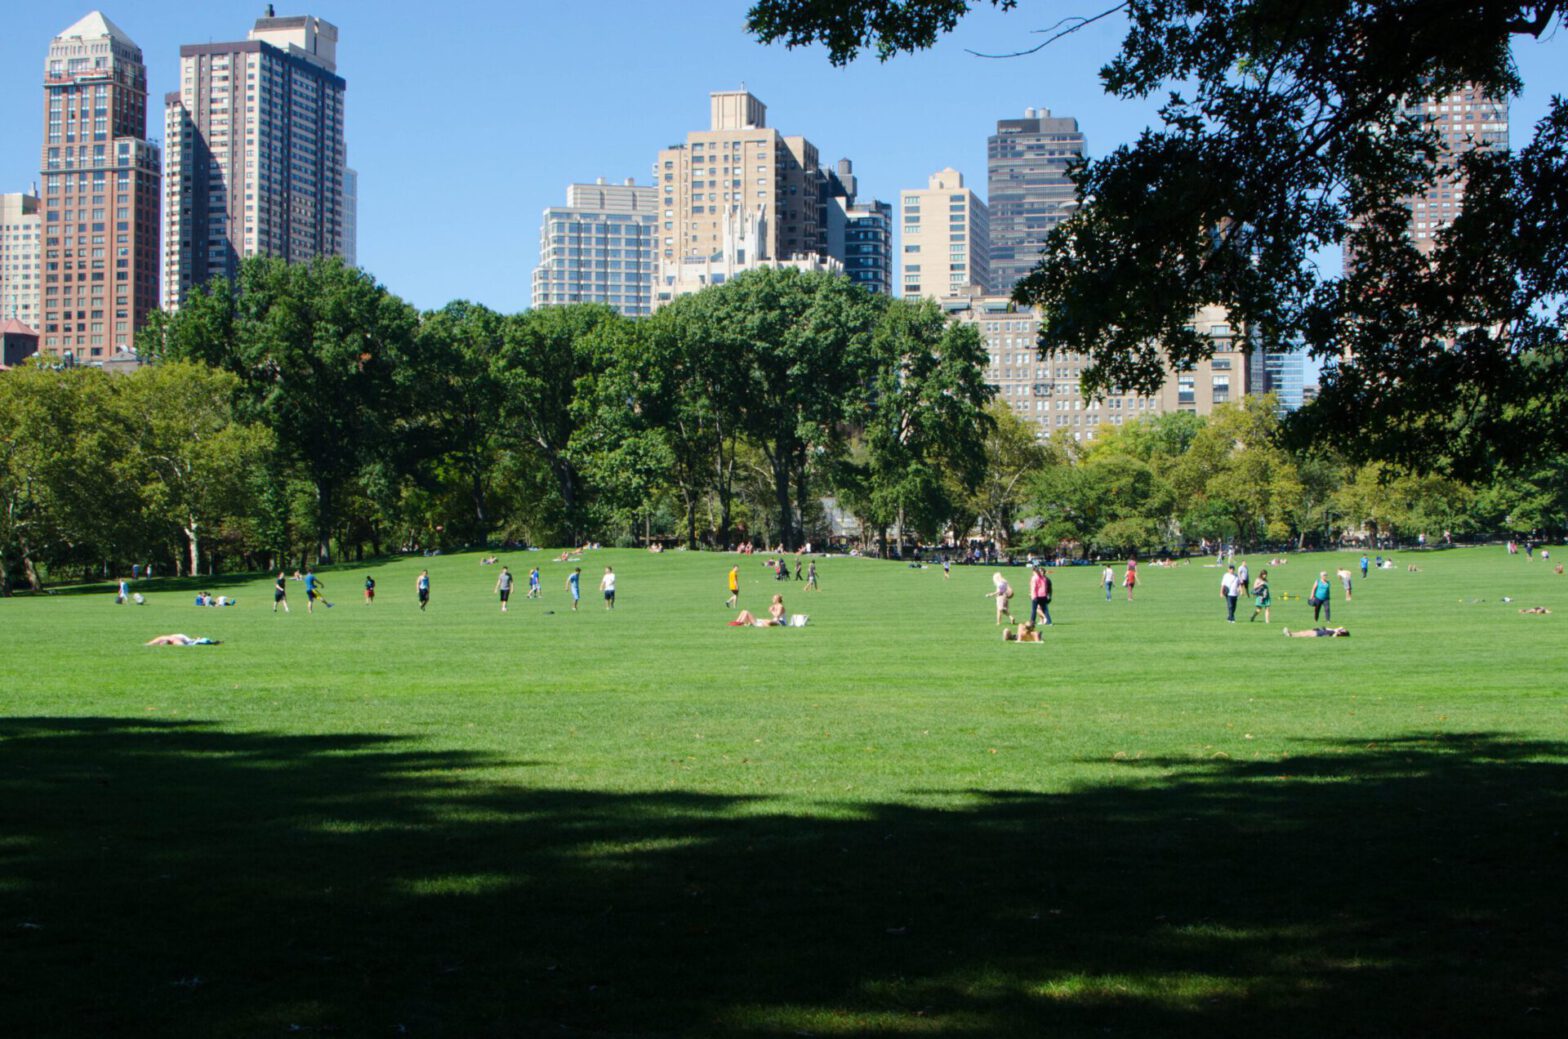 Zdjęcie ludzi w parku, z wieżowcami w tle